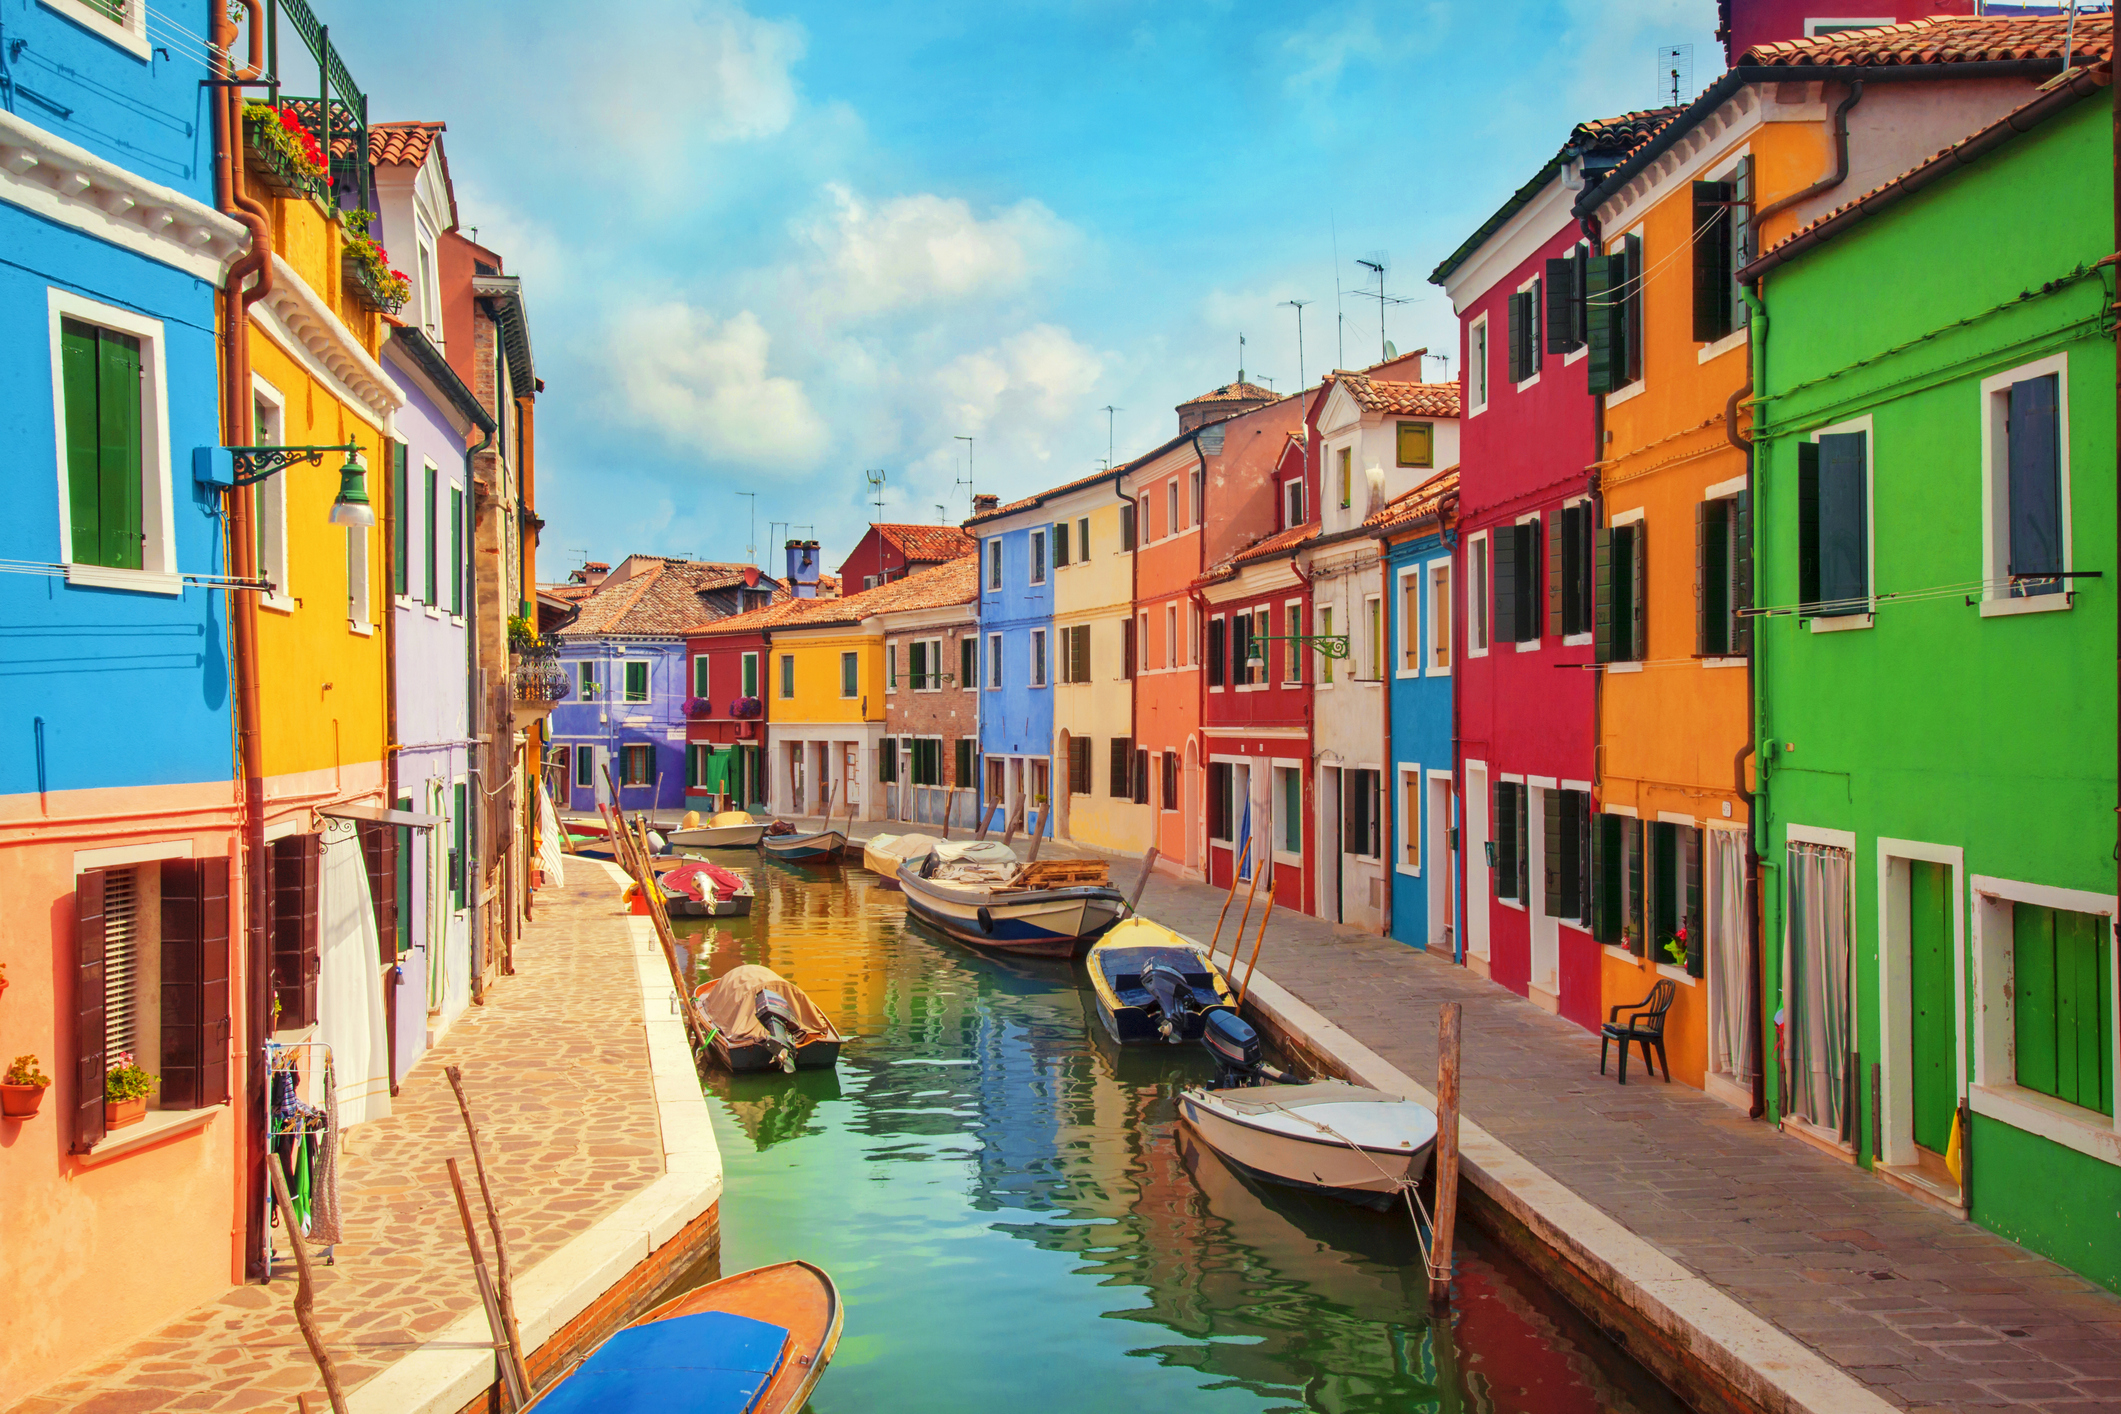 Бура̀но разположен върху 4 свързани островчета (често считани за общ остров) във Венецианската лагуна. Прочут е с къщите си, боядисани в ярки цветове, и с местната занаятчийска изработка на буранска дантела.